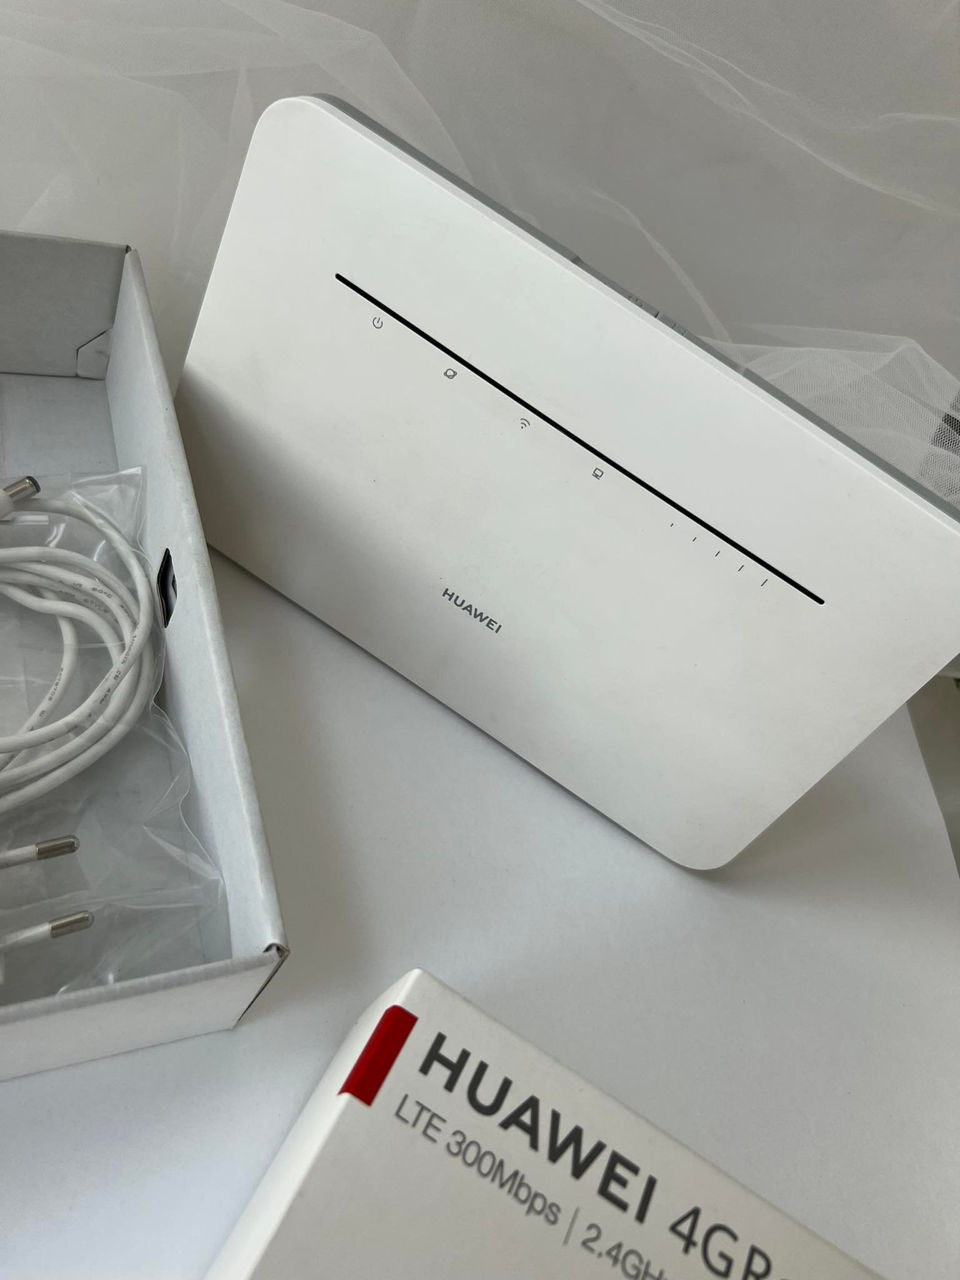 Huawei 4g Router 3 Pro B535 232 9205